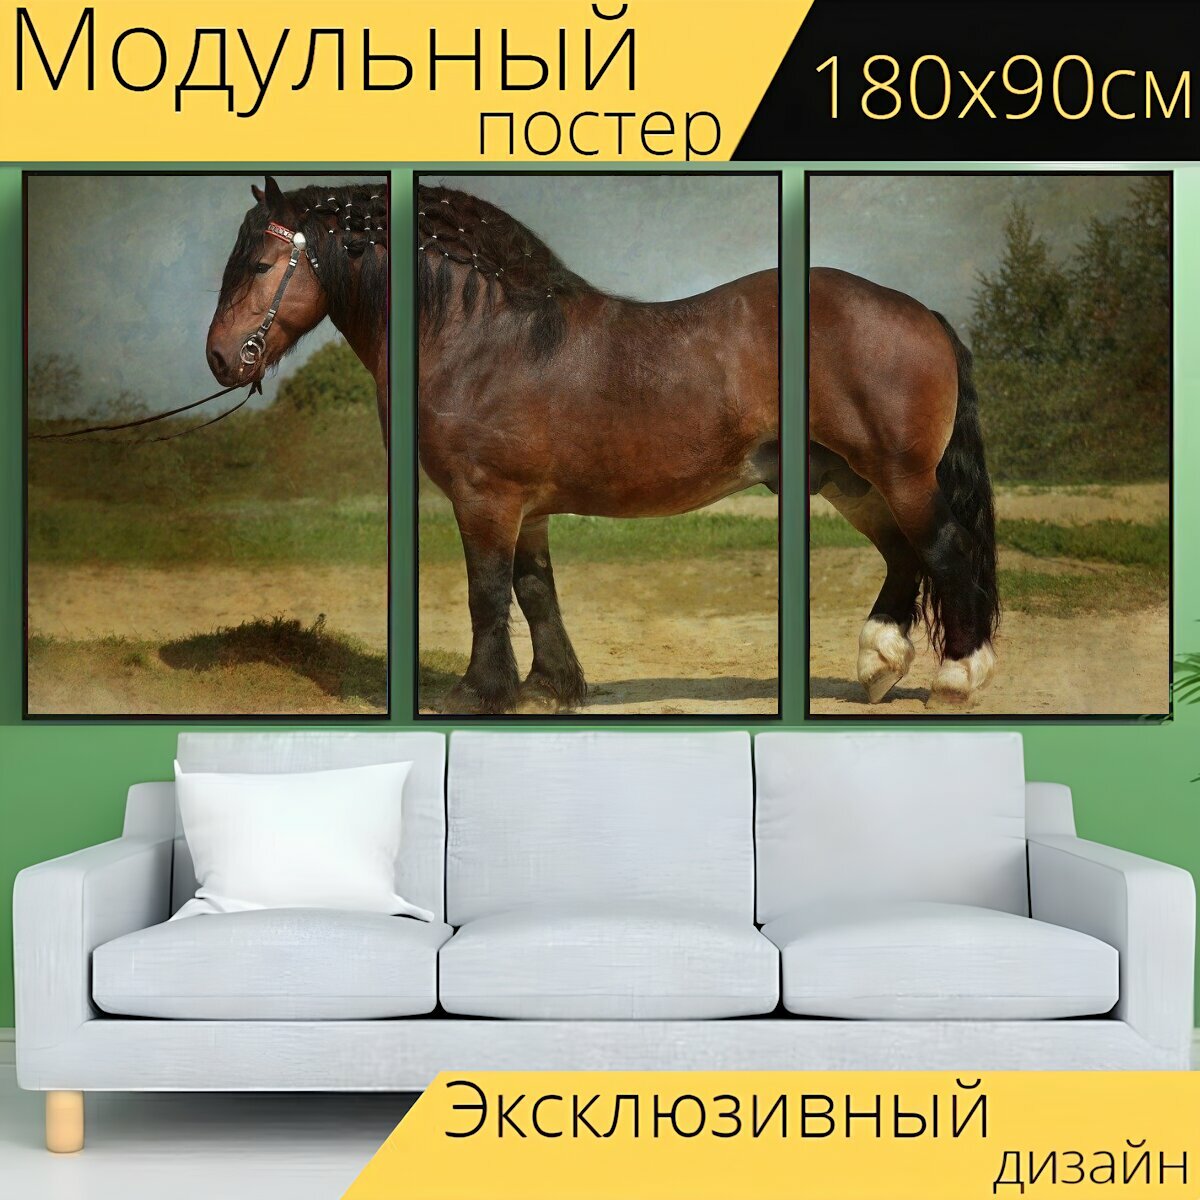 Модульный постер "Лошадь, проект, ломовая лошадь" 180 x 90 см. для интерьера